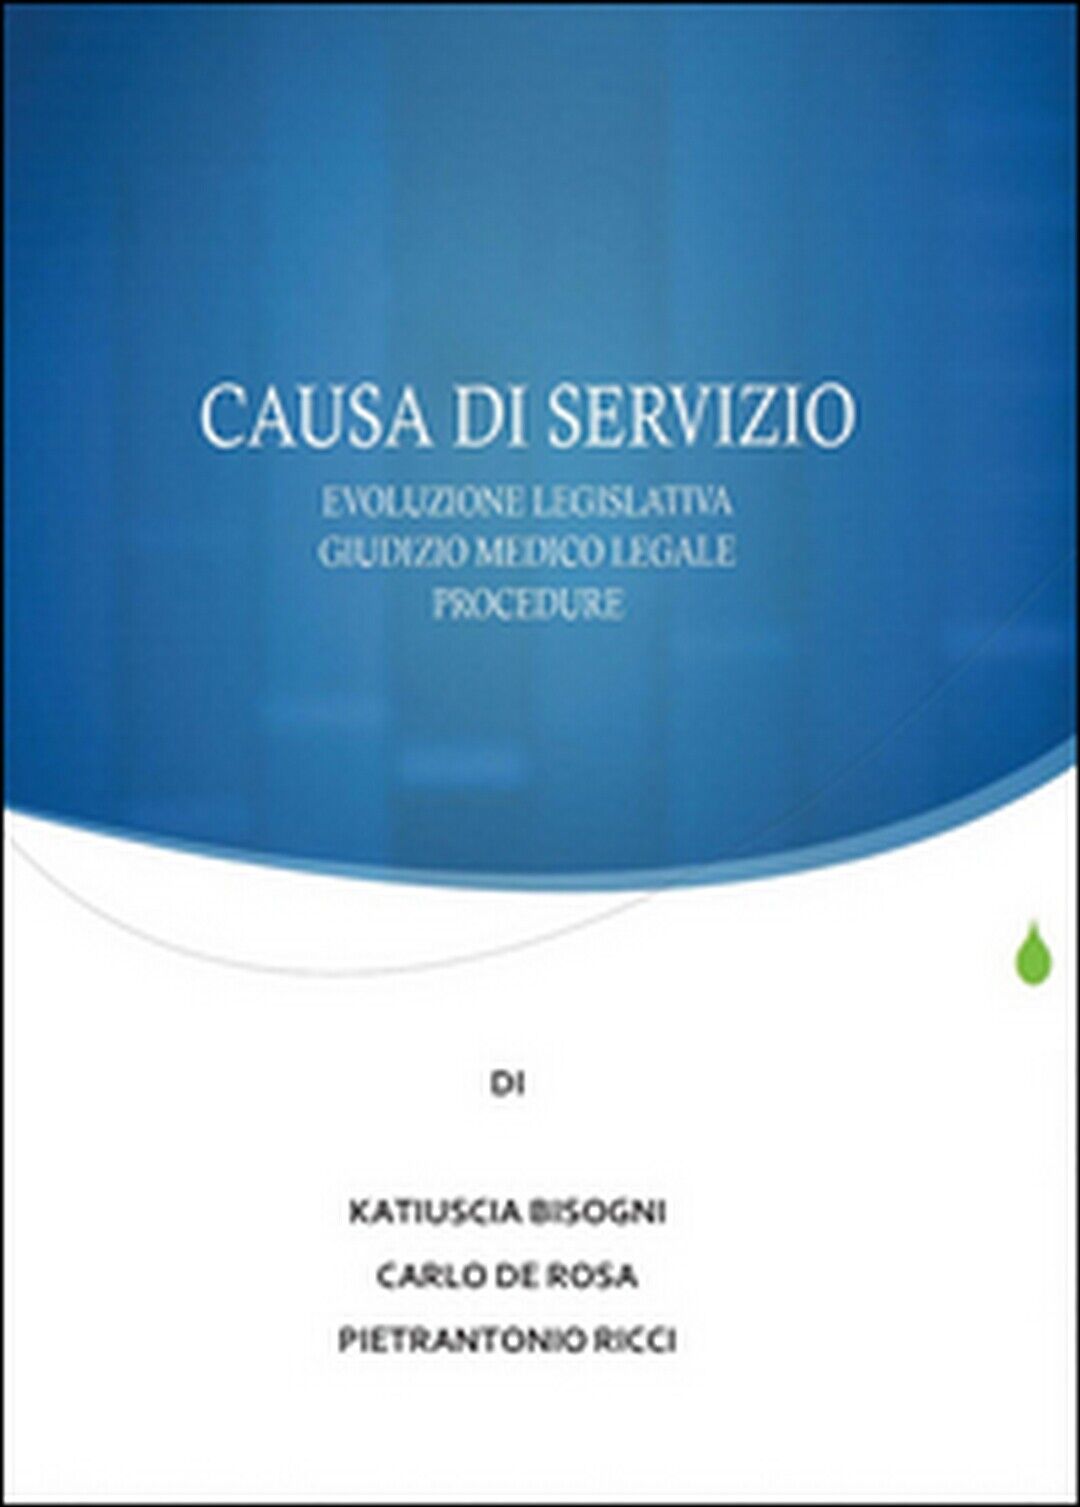 Causa di servizio,Pietrantonio Ricci, Carlo De Rosa, Katiuscia Bisogni, 2015